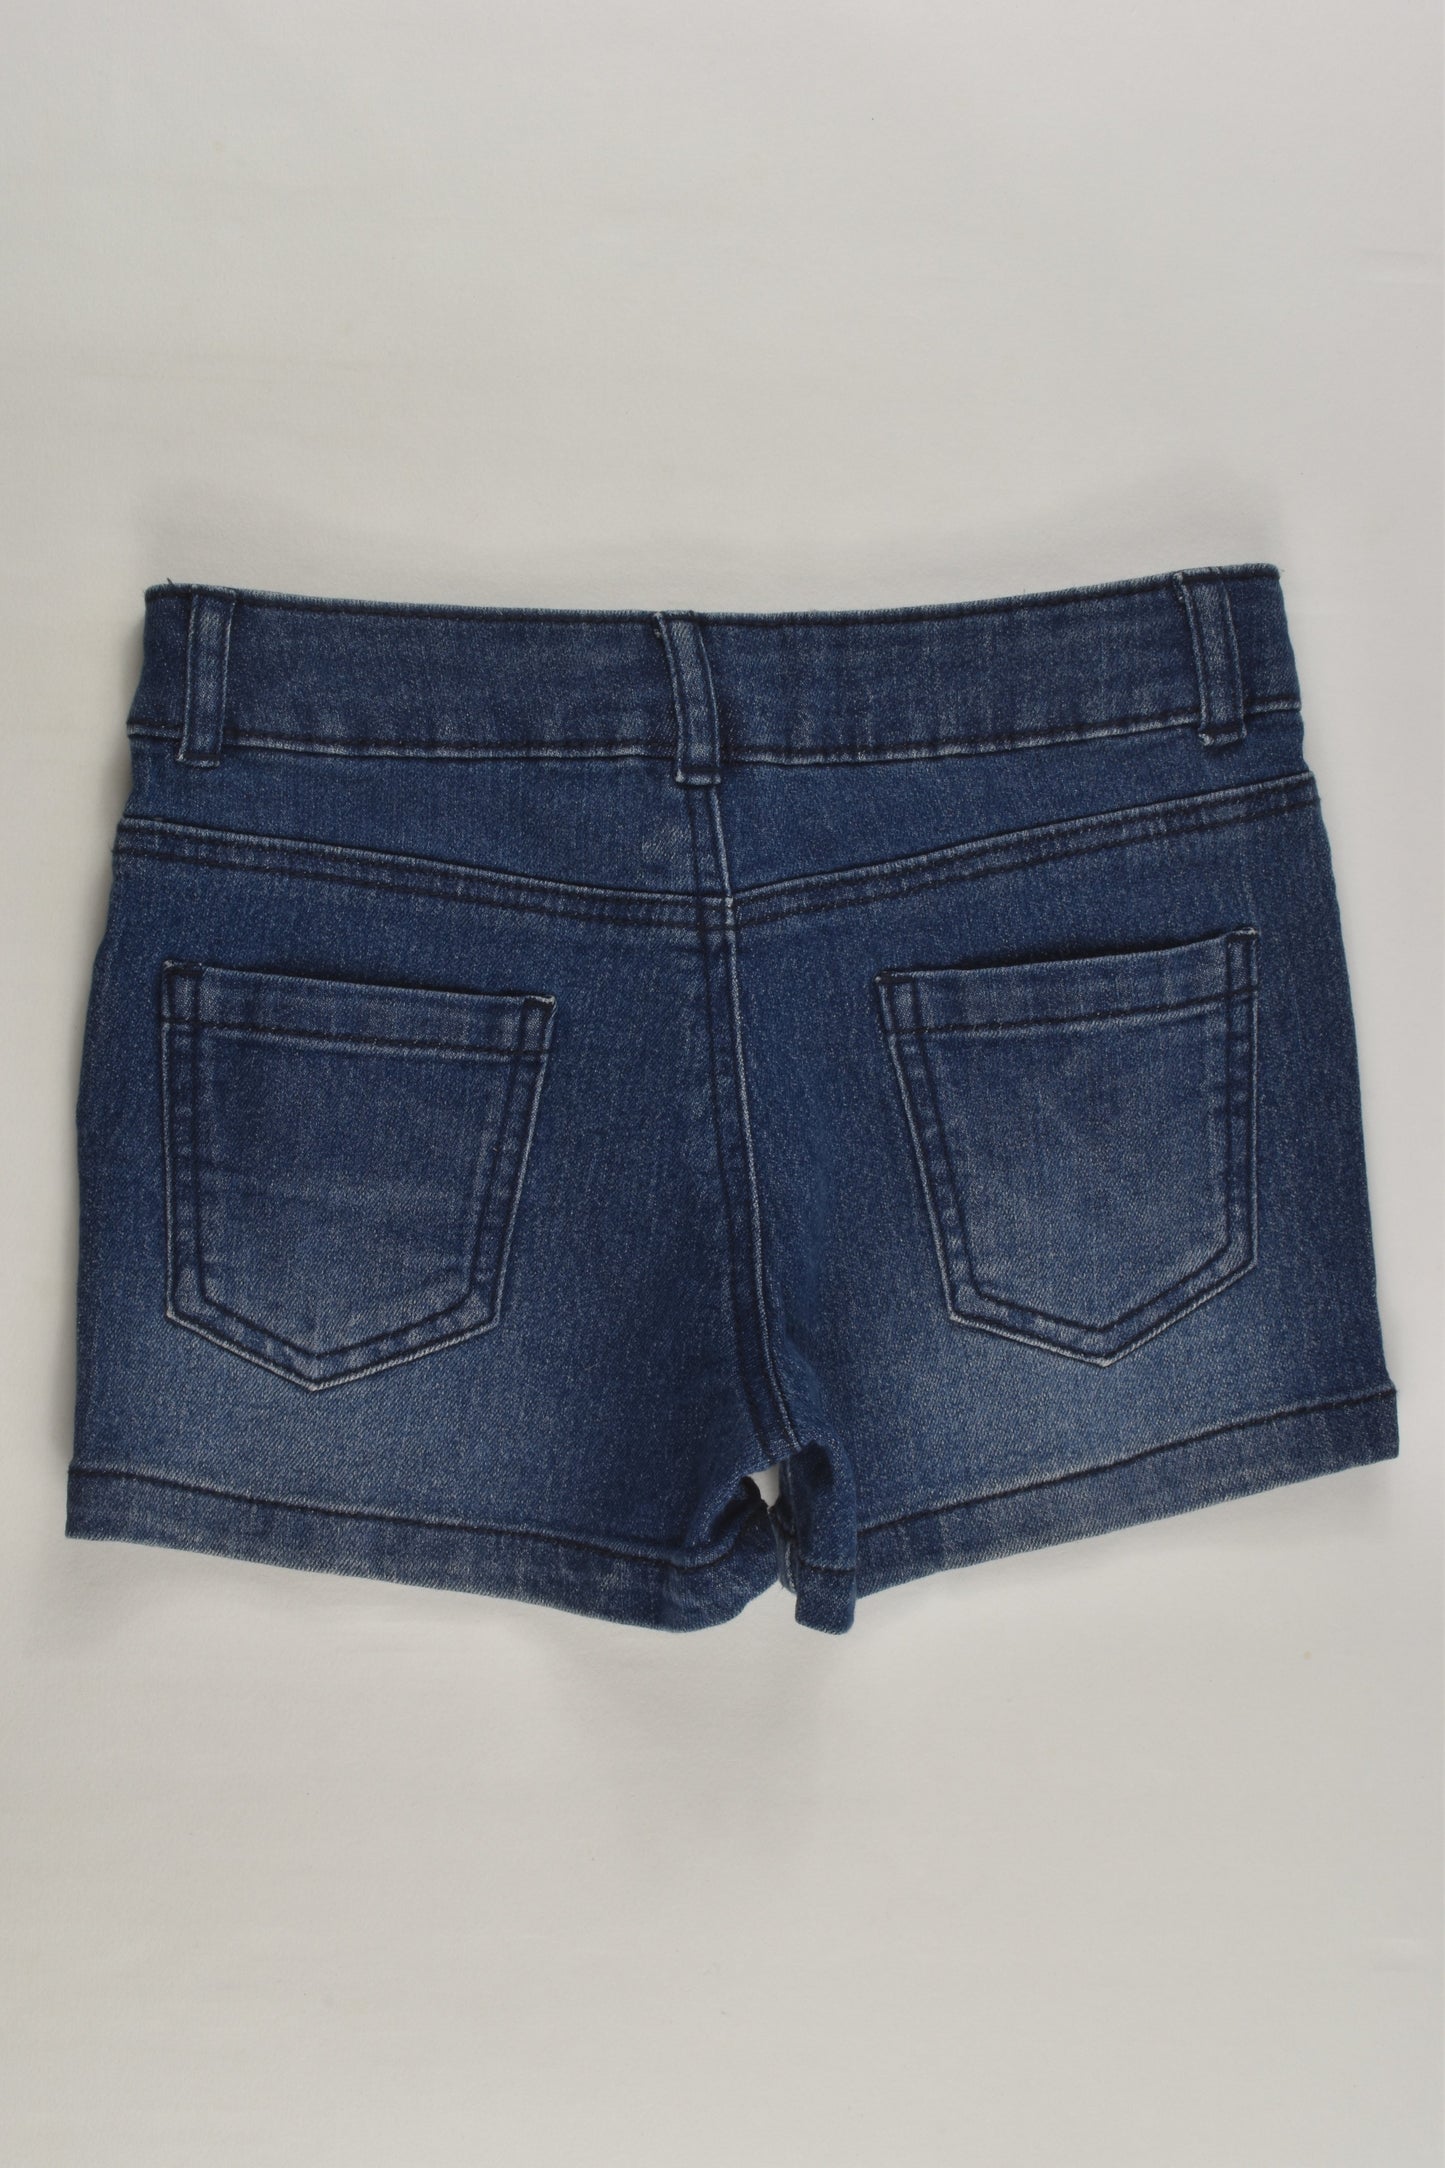 The 1964 Denim Company Size 4 Stretchy Denim Shorts